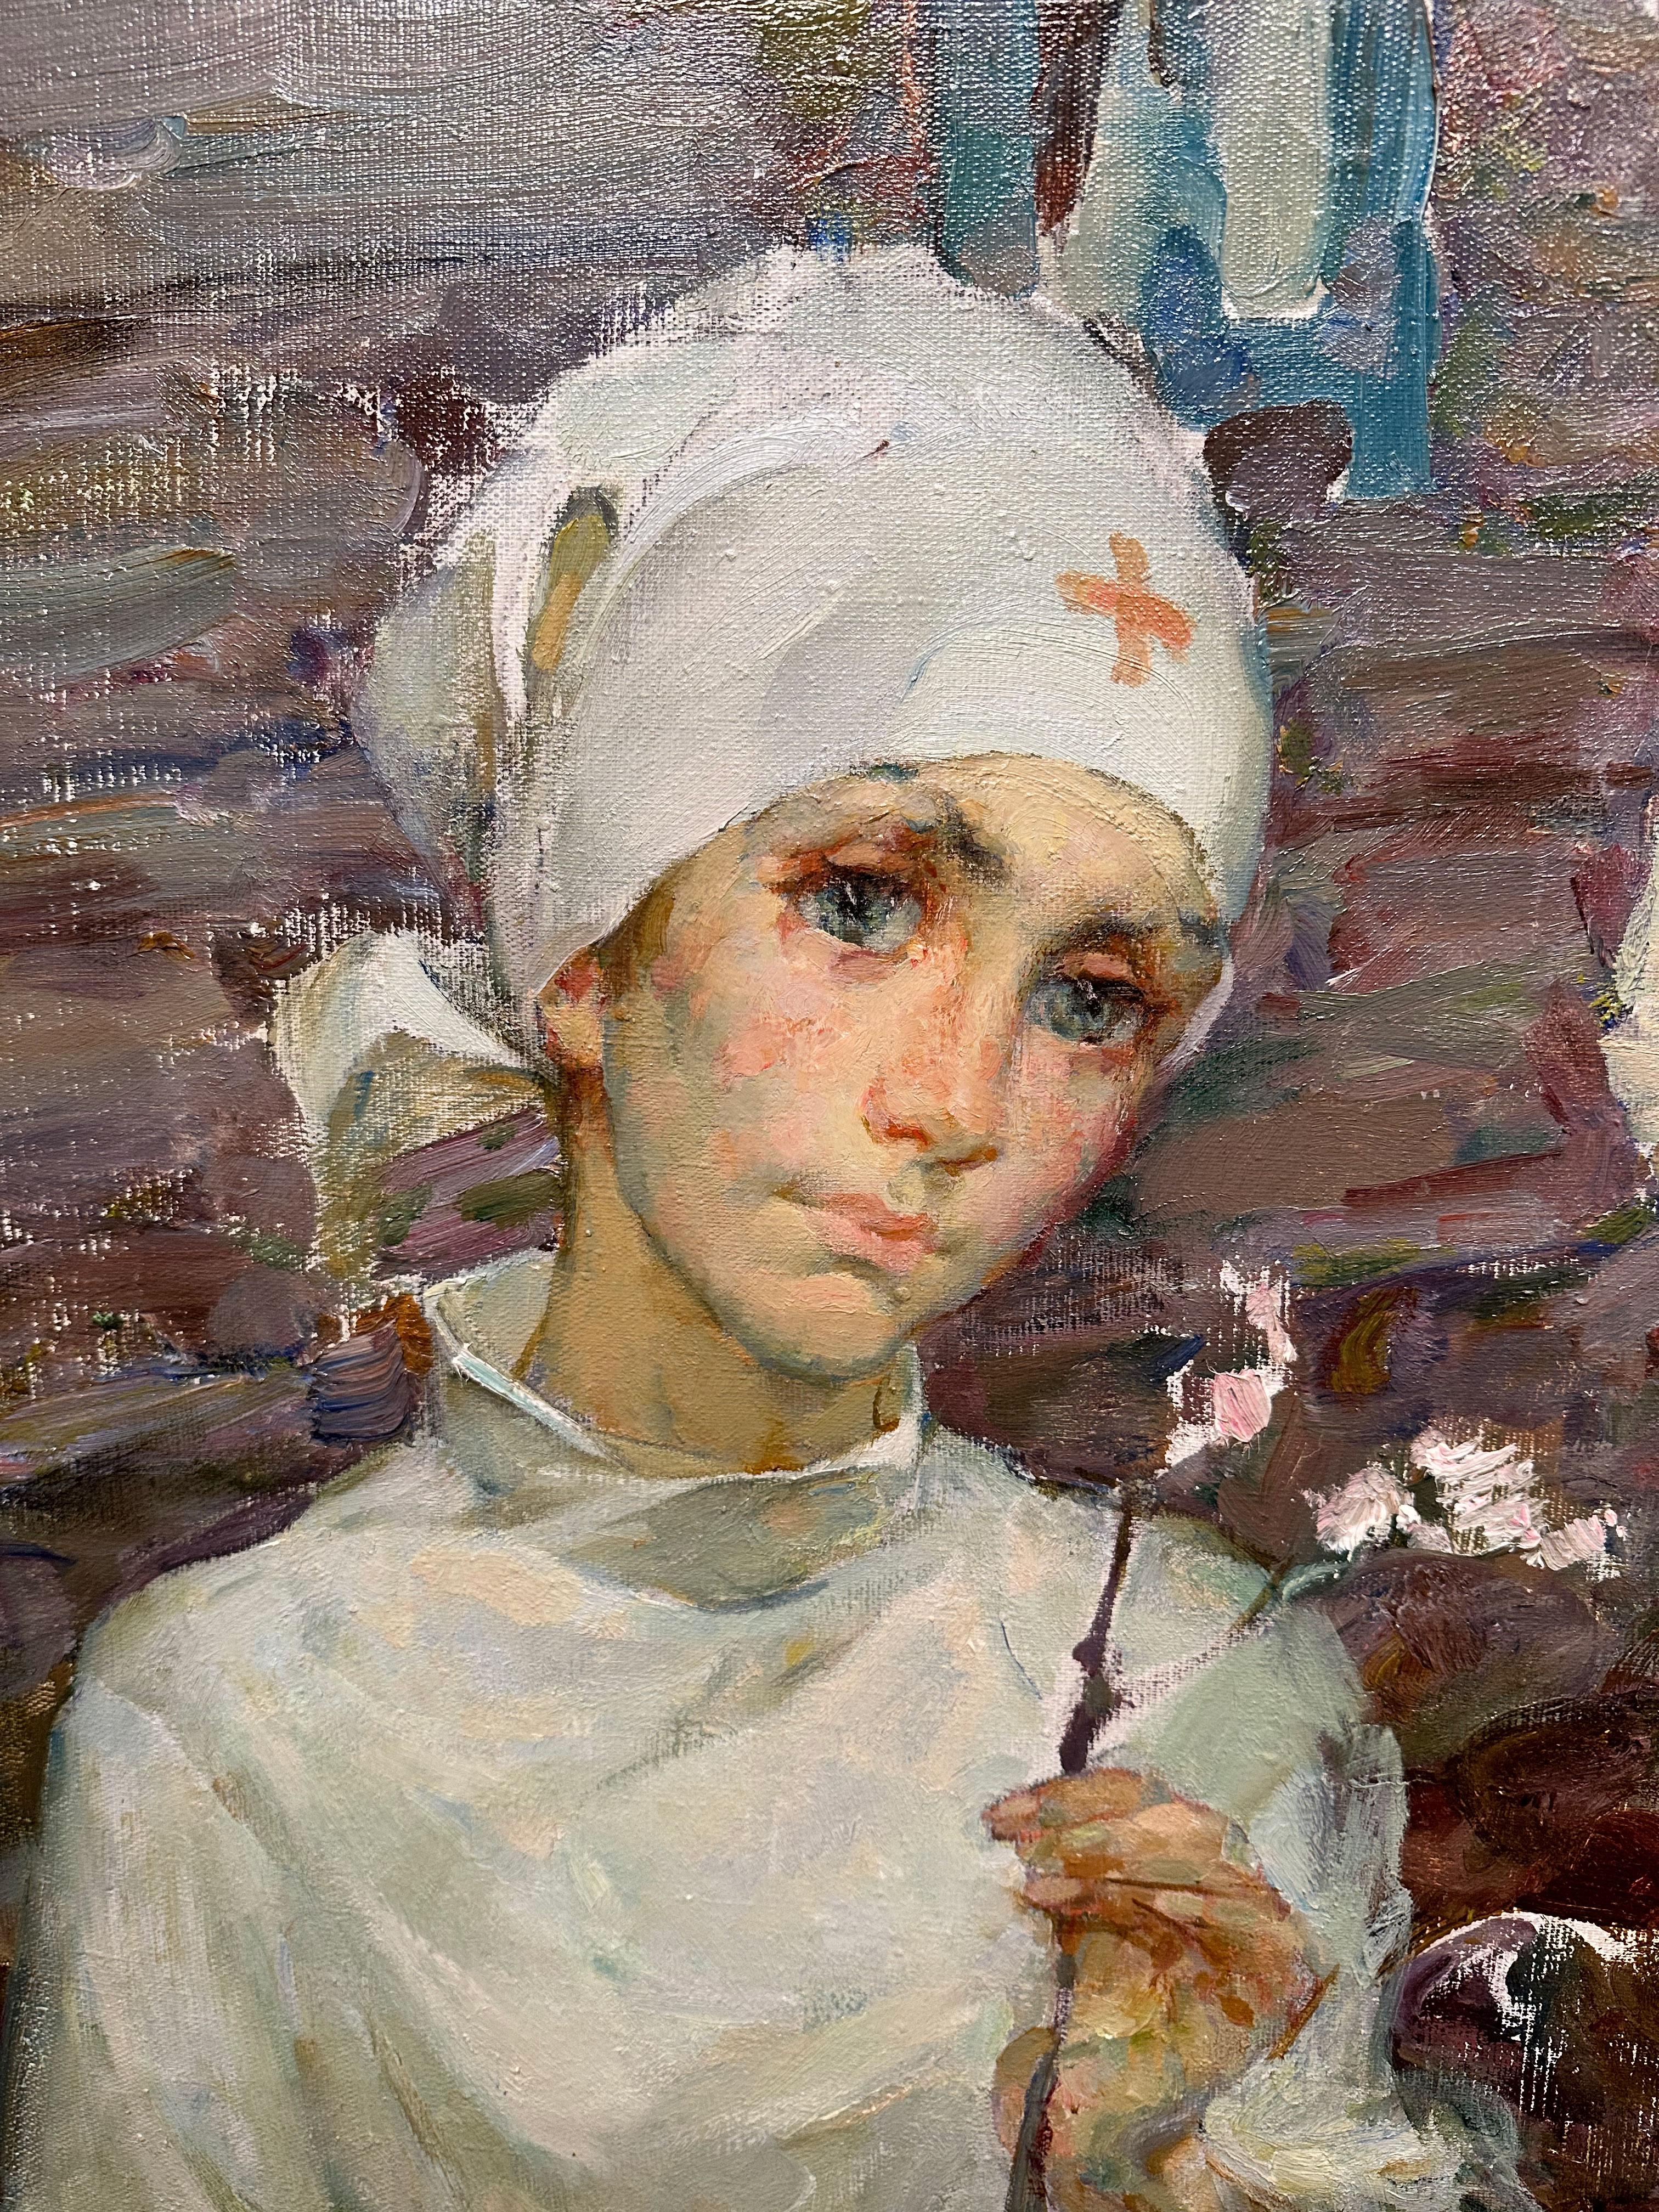 Galina Vasilevna Pshenitsina wurde 1940 in der Stadt Gorki (heute Nischni Nowgorod) geboren. Sie begann ihr Studium an der nach Johanson benannten Kunstschule in St. Petersburg. Im Jahr 1959 wechselte sie an das Repin-Kunstinstitut und studierte im